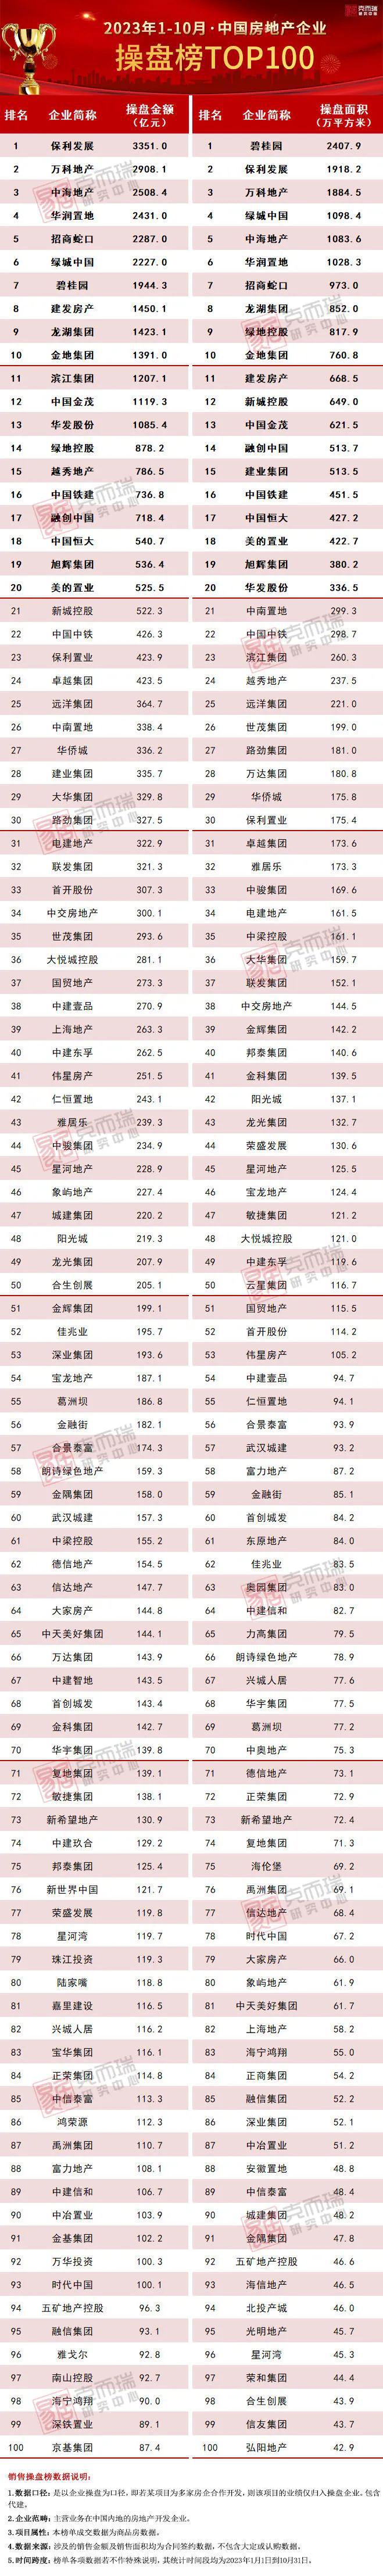 2023年1-10月中国房地产企业销售TOP100排行榜